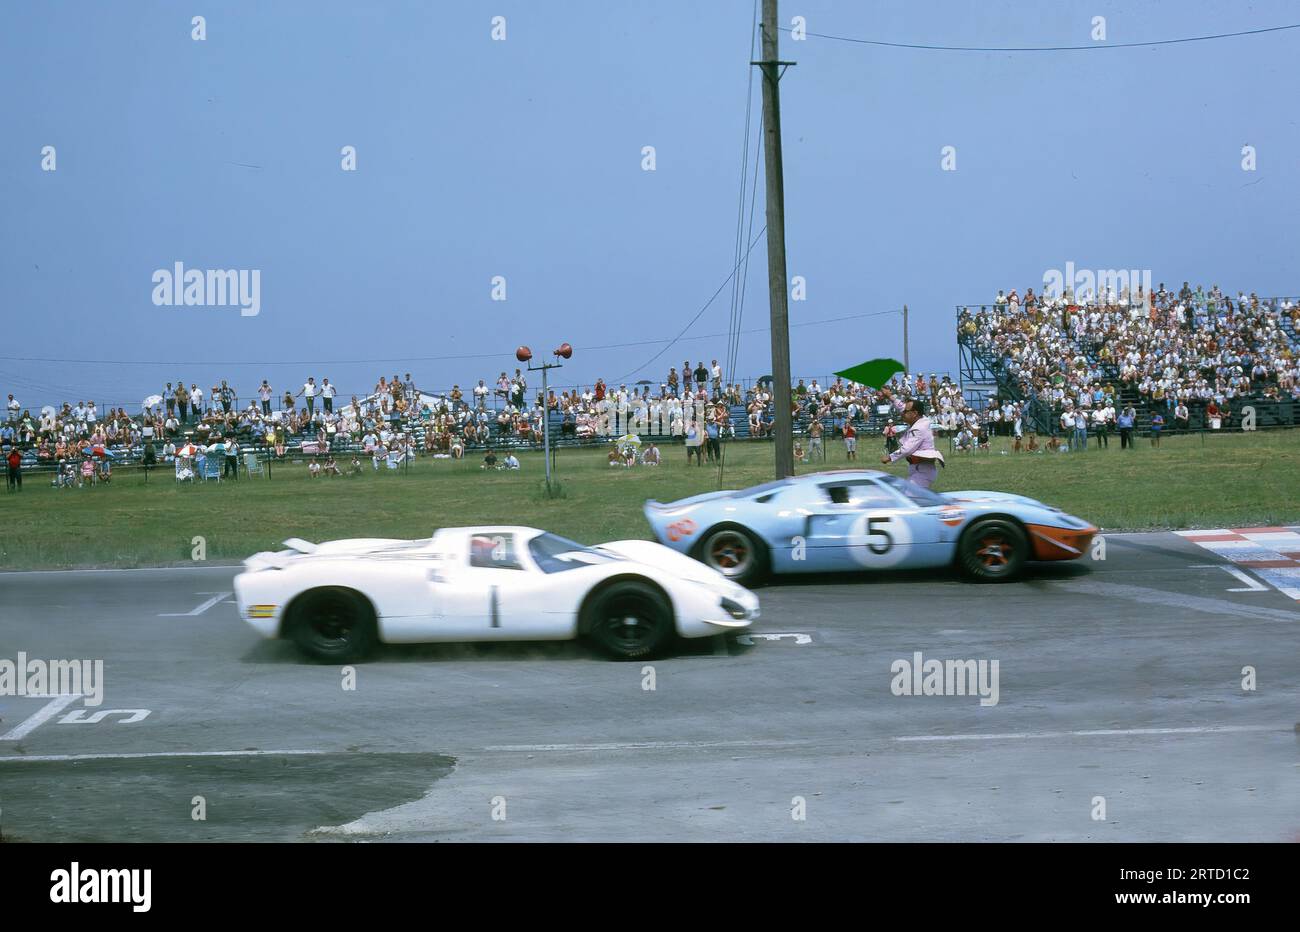 Start der Watkins Glen International Championship 1968 für das 6-Stunden-Rennen. Wagen Nr. 1 - Jo Siffert (CH)/Vic Elford (GB); Porsche 908 Coupé Nr. 012; Start 1.; DNF; Auto Nr. 5 -; Jacky Ickx (B)/Lucien Bianchi (B); Ford GT40 Nr. 1075; Start 2.; Ziel 1 Stockfoto